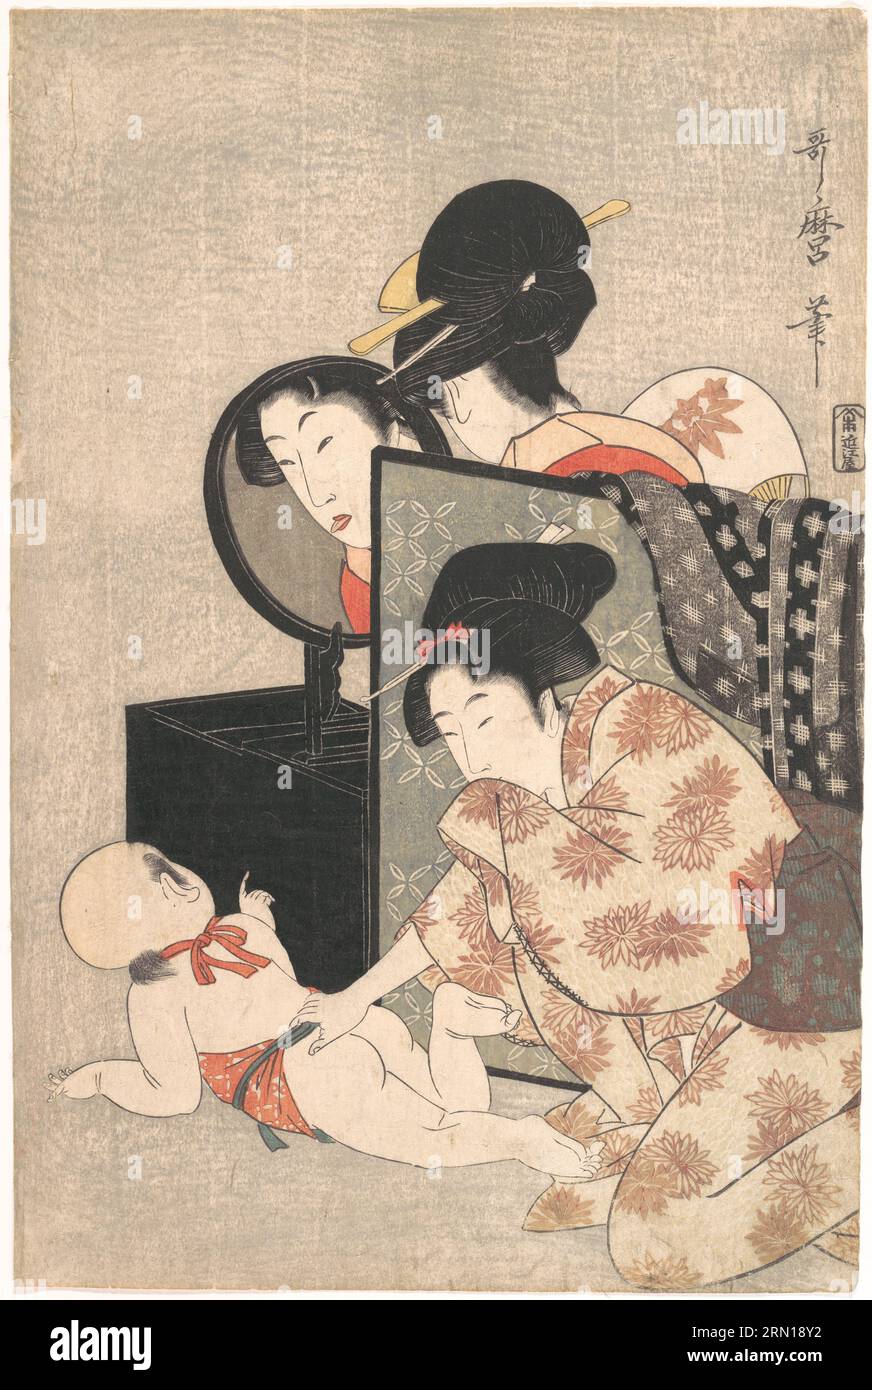 Giappone: Due donne con neonato. Ukiyo-e Woodblock print di Kitagawa Utamaro (1753 - 31 ottobre 1806), c. 1793. Kitagawa Utamaro era un incisore e pittore giapponese, considerato uno dei più grandi artisti di stampe in legno (ukiyo-e). È noto soprattutto per i suoi studi magistralmente composti sulle donne, noti come bijinga. Ha anche prodotto studi sulla natura, in particolare libri illustrati di insetti. Foto Stock